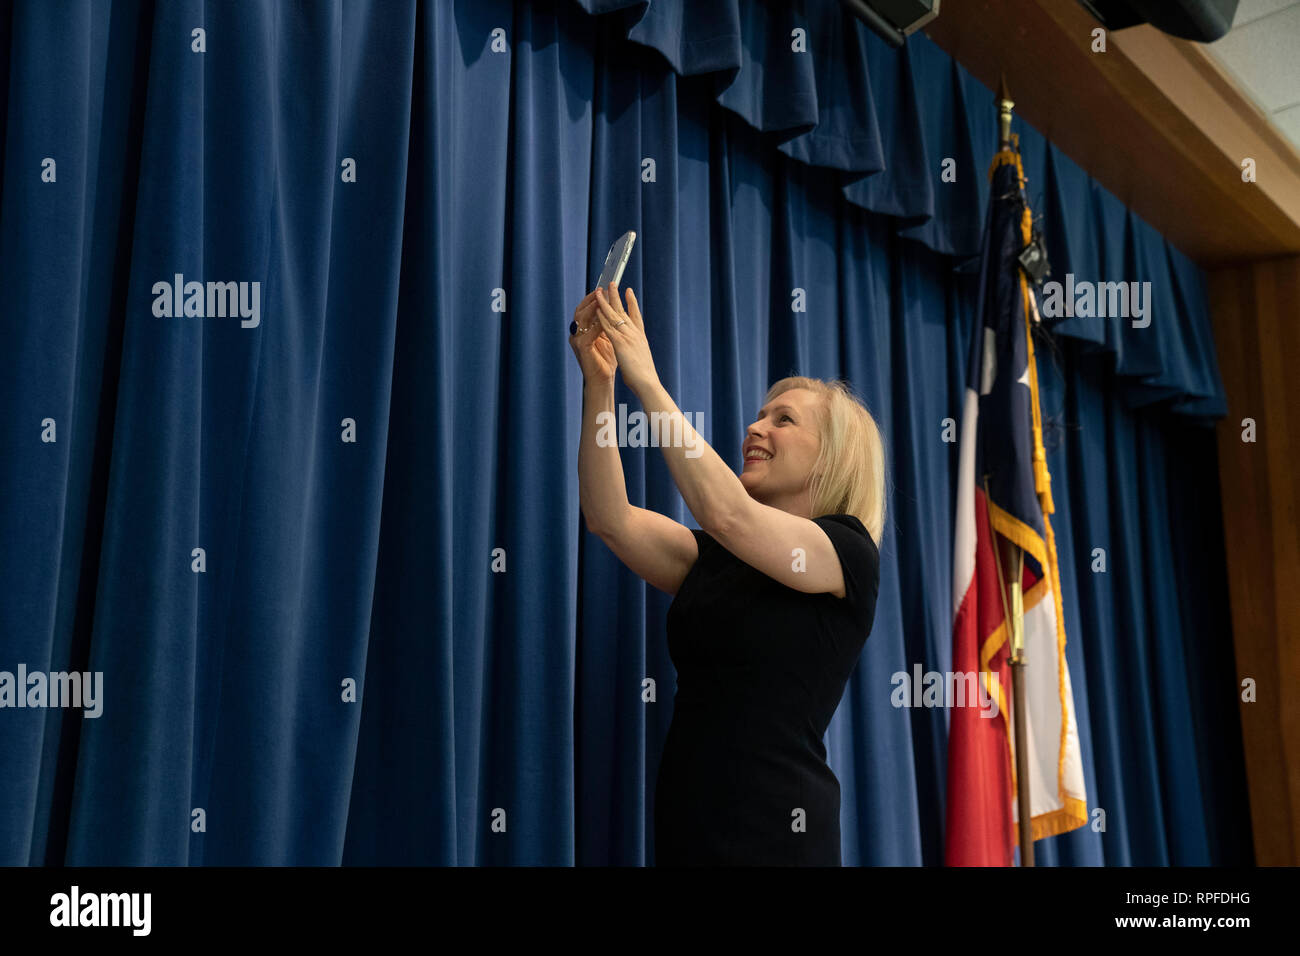 United States Senator Kirsten Gillibrand, ein Demokrat von New York, nimmt eine selfie von der Bühne mit ihrem Publikum im Hintergrund, während einer Rede an der Ann Richards Schule für junge Frauen Führer in Austin. Gillibrand, 52, hat ihr Angebot für die demokratische Präsidentschaftskandidatur 2020 im Januar 2019. Stockfoto